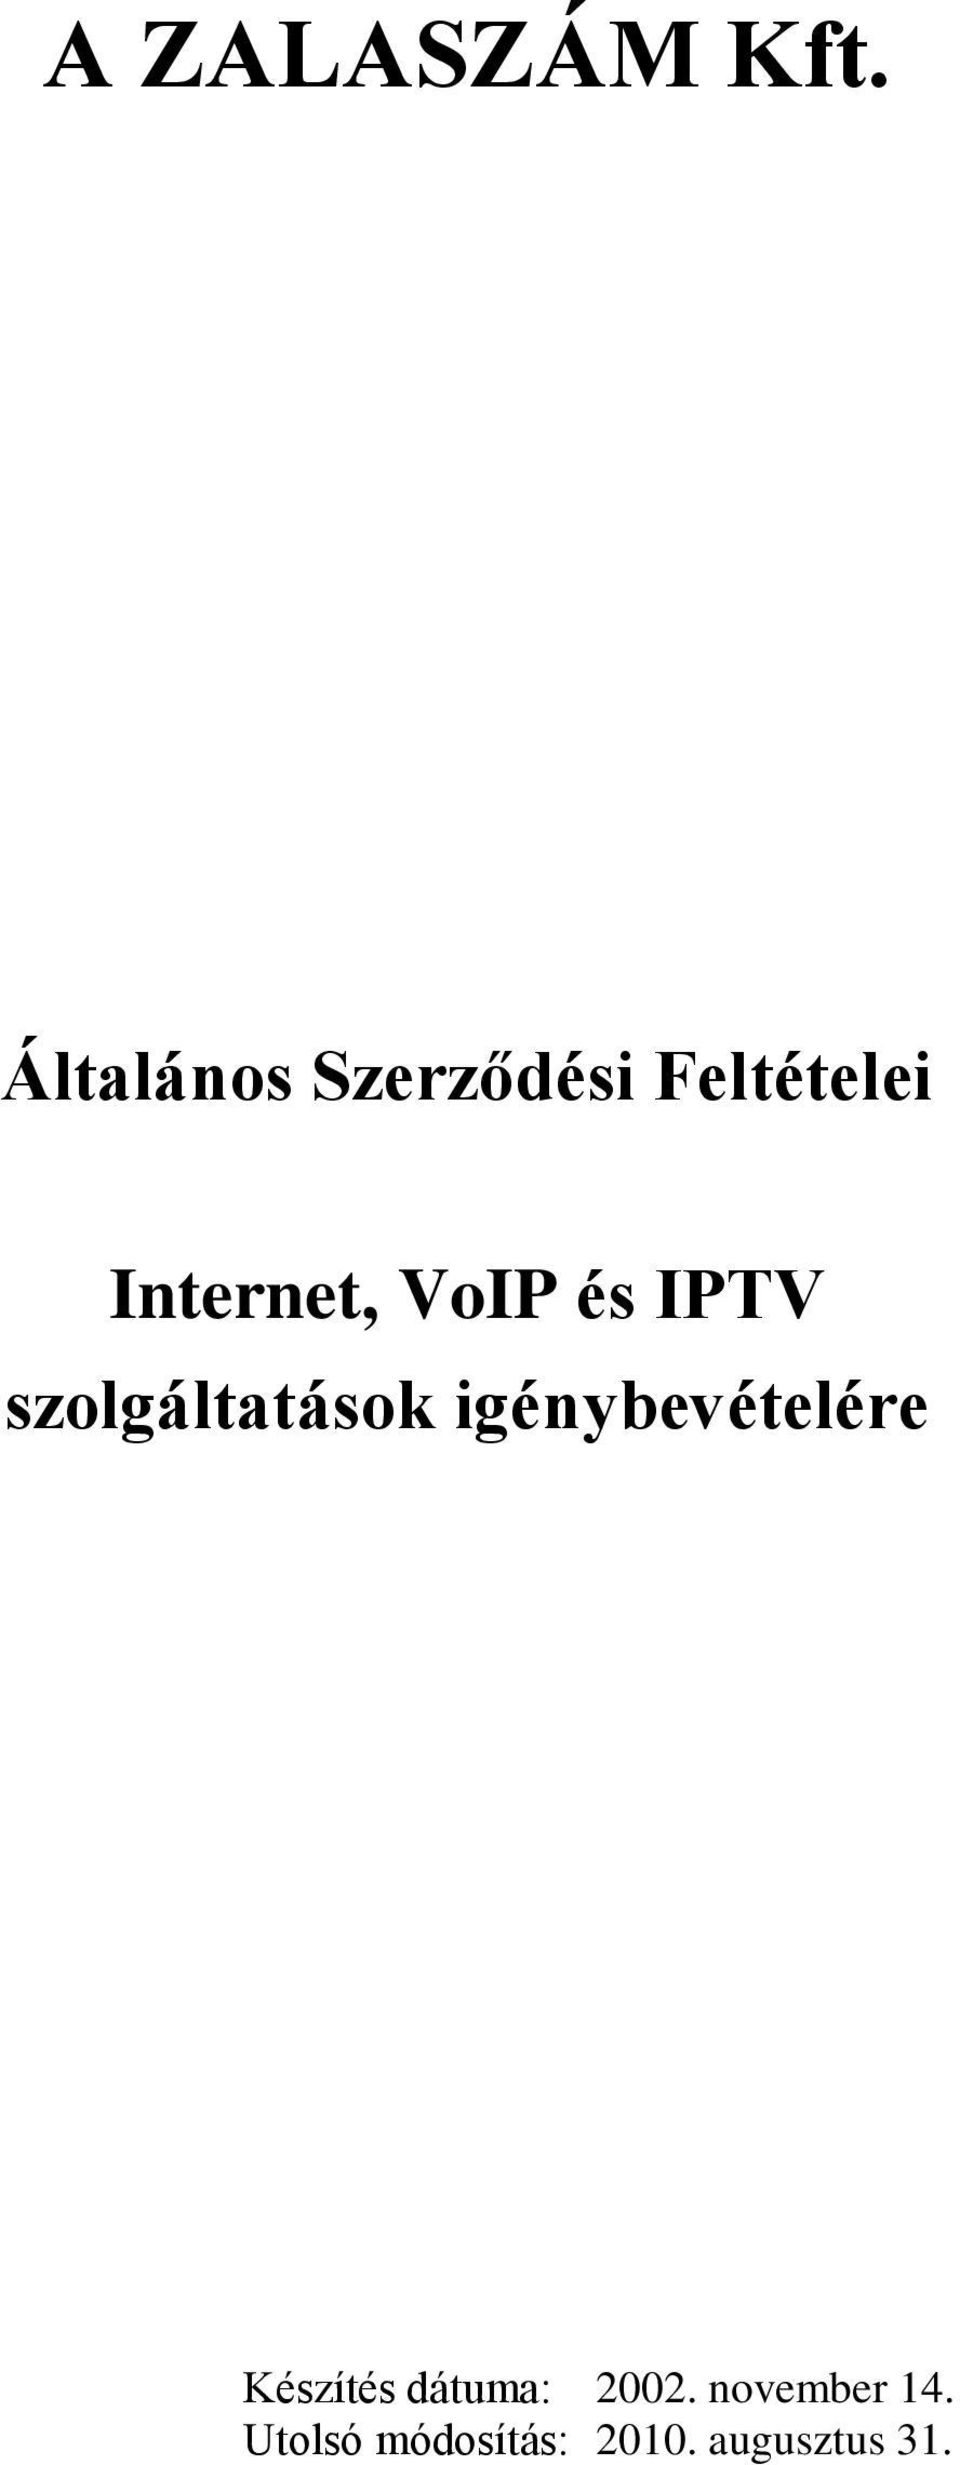 VoIP és IPTV szolgáltatások igénybevételére